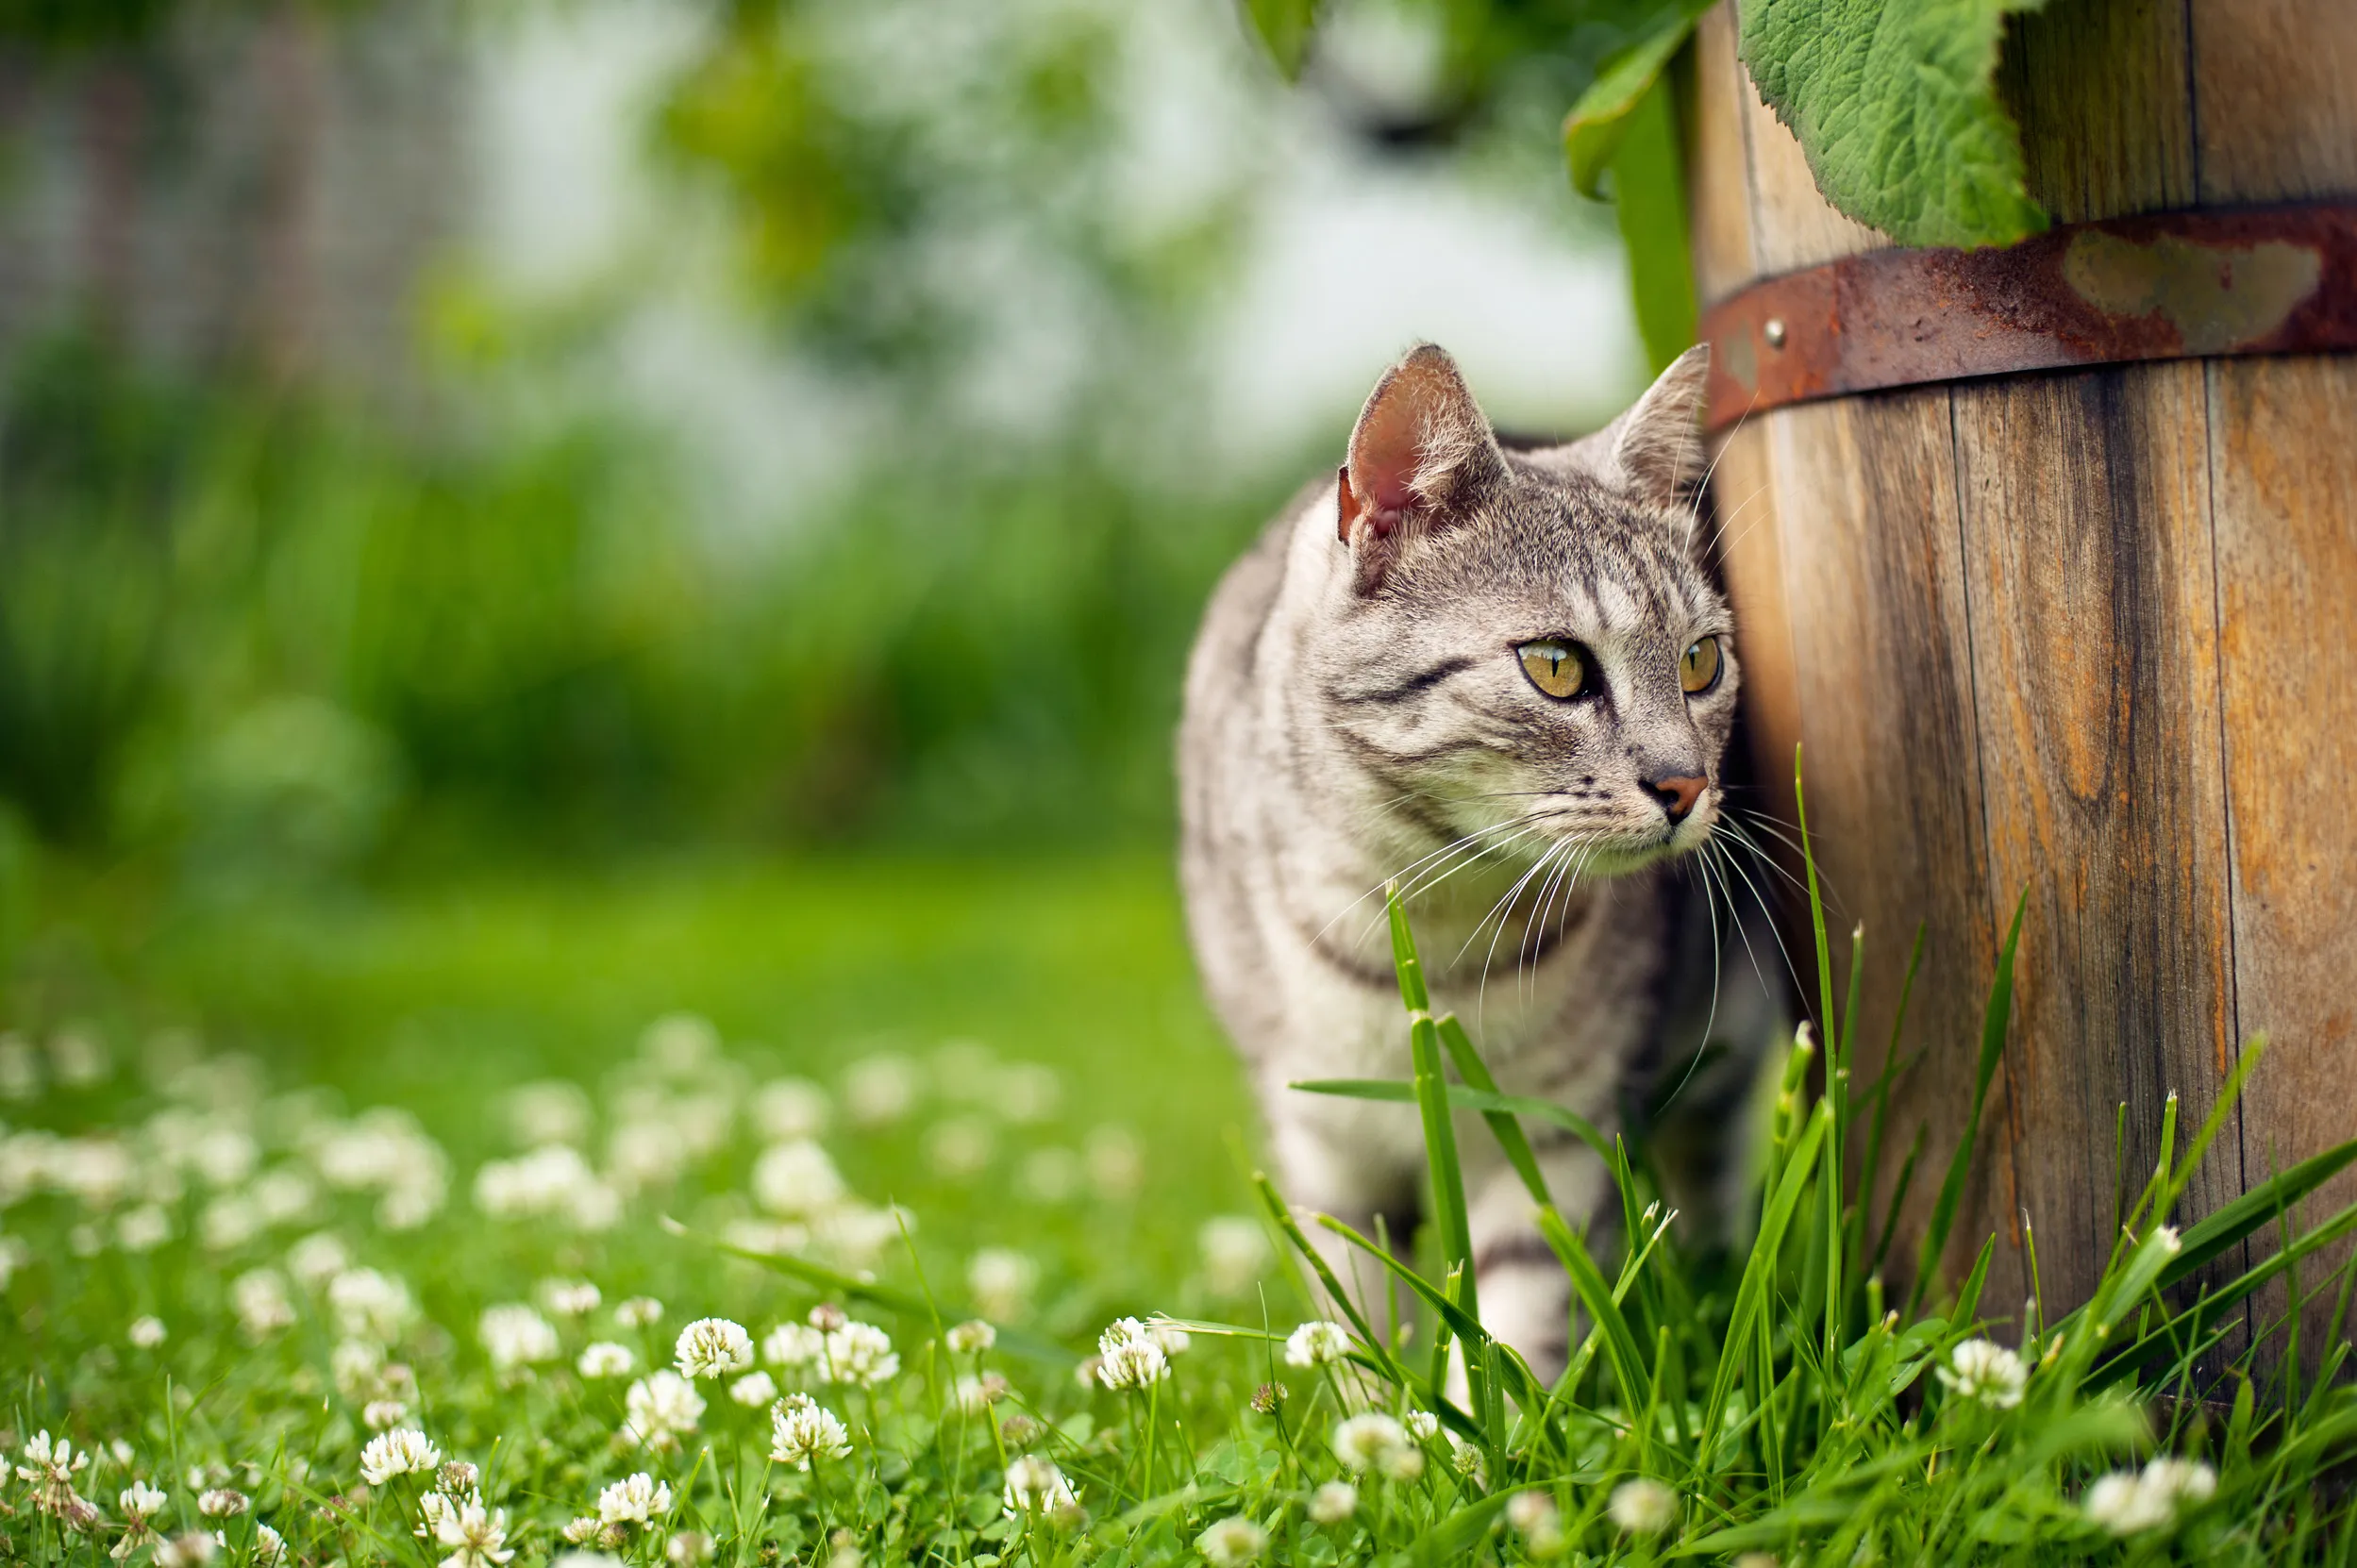 A cat near a wooden plant pot in a garden.